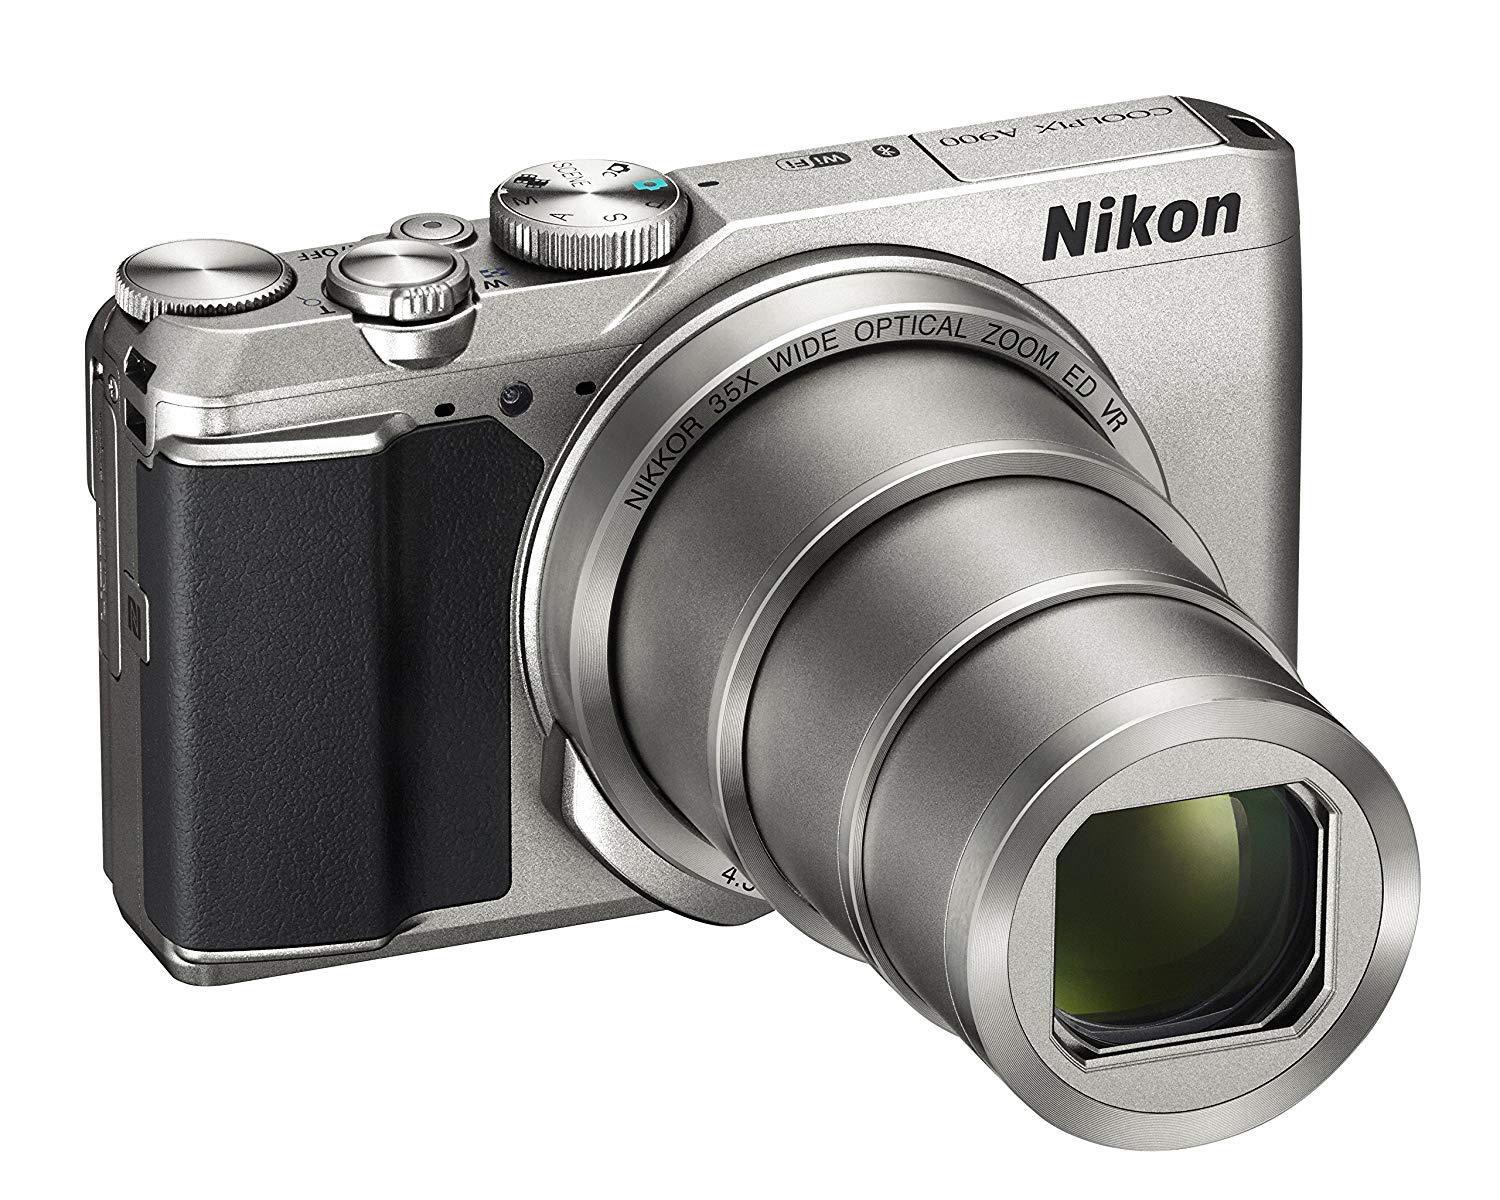 【Nikon】 デジタルカメラ COOLPIX 光学35倍ズーム